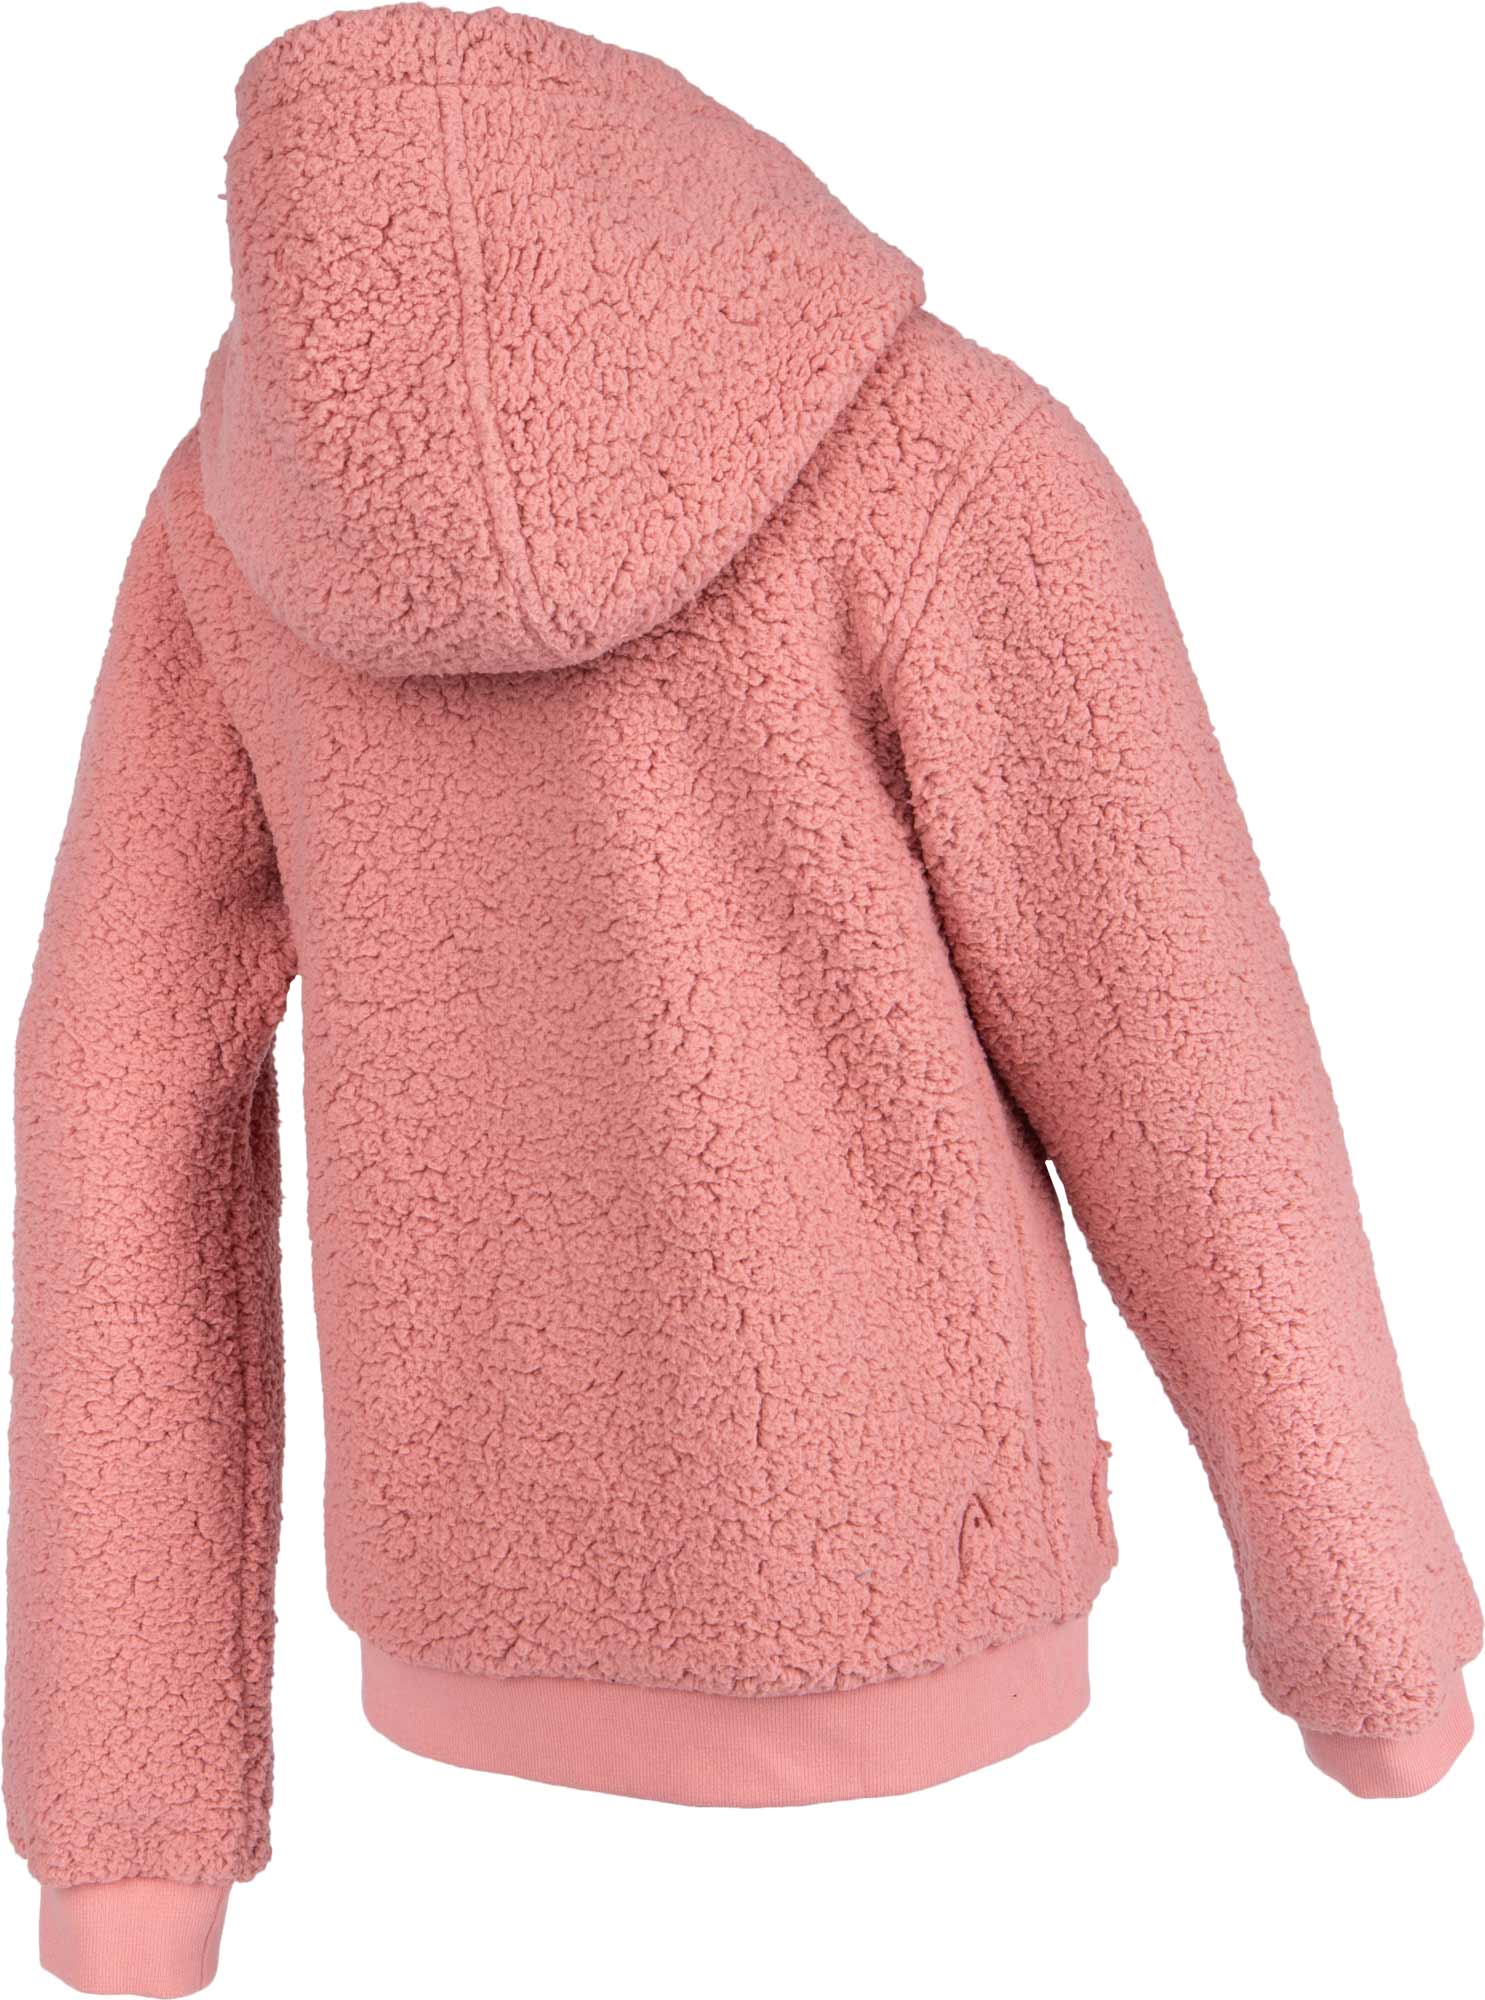 Girls' fleece hoodie